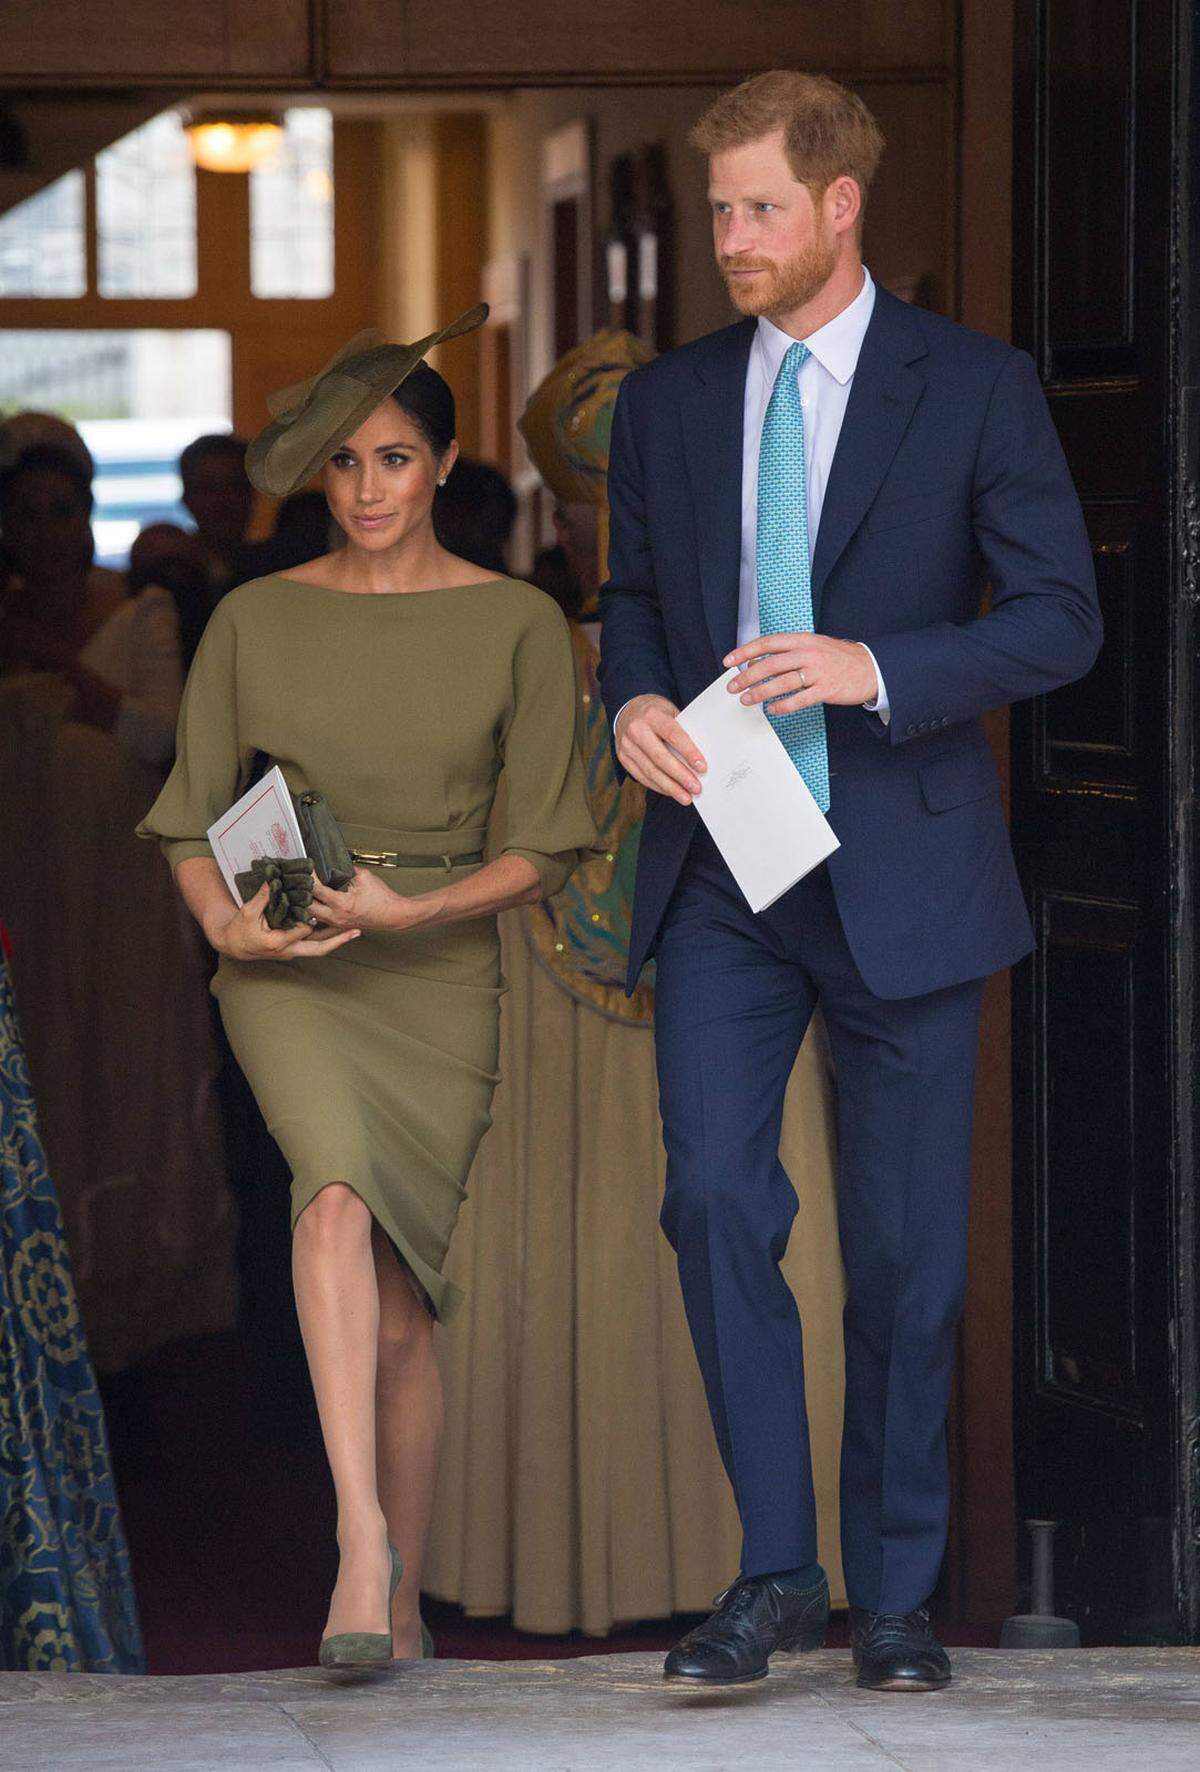 Herzogin Meghan von Sussex wählte für die Taufe ein olivgrünes Kleid von Ralph Lauren und einen gleichfarbigen Hut von Stephen Jones.